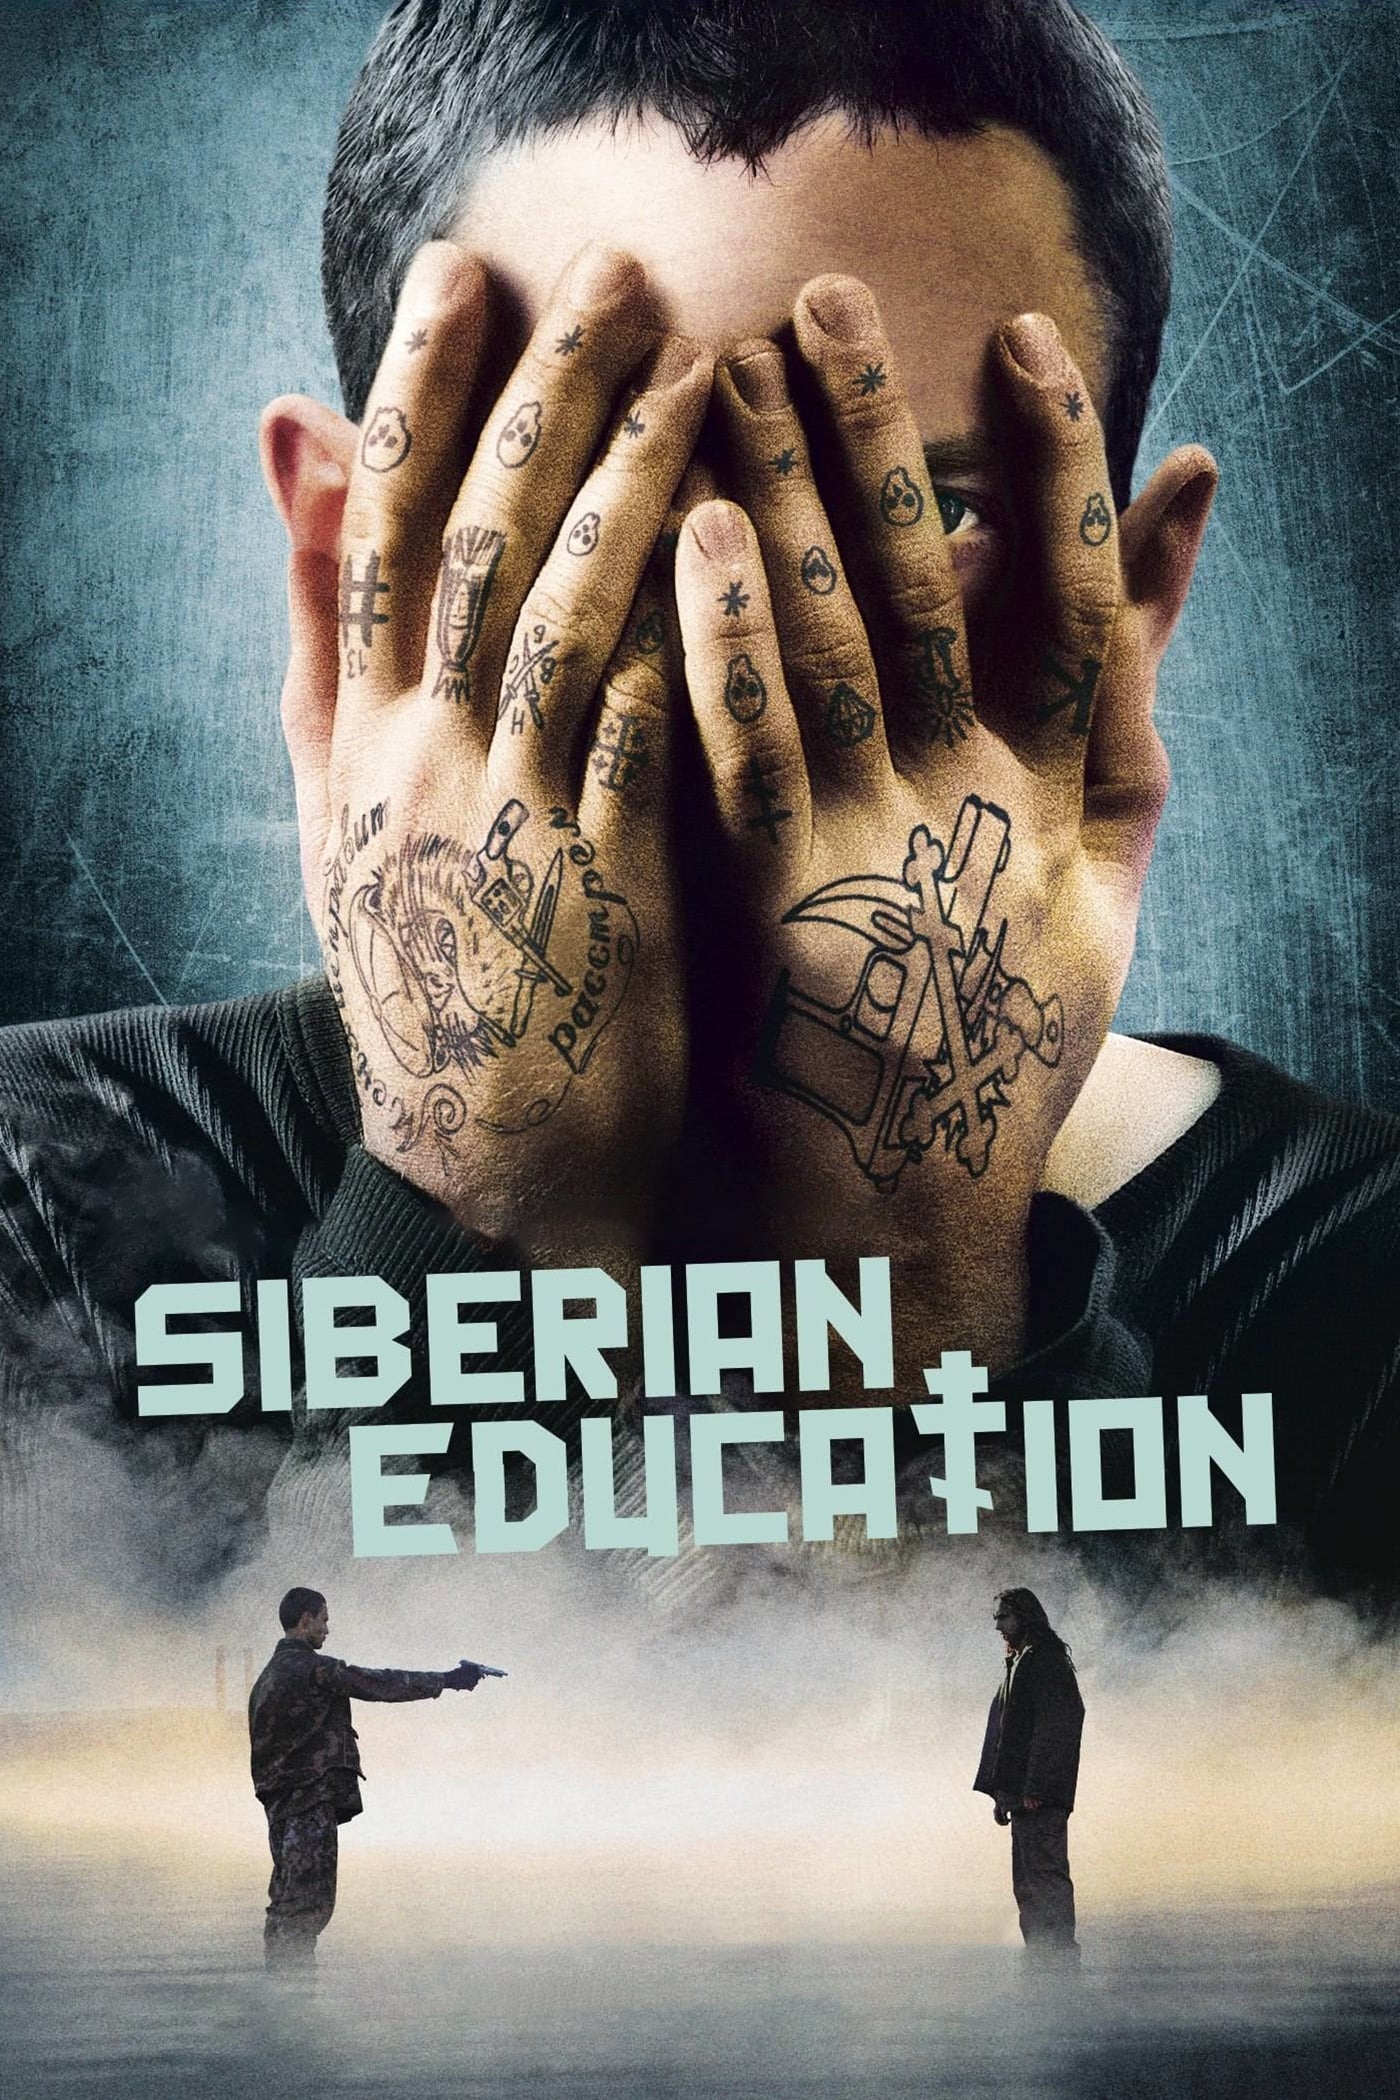 Sibirische Erziehung (2013)